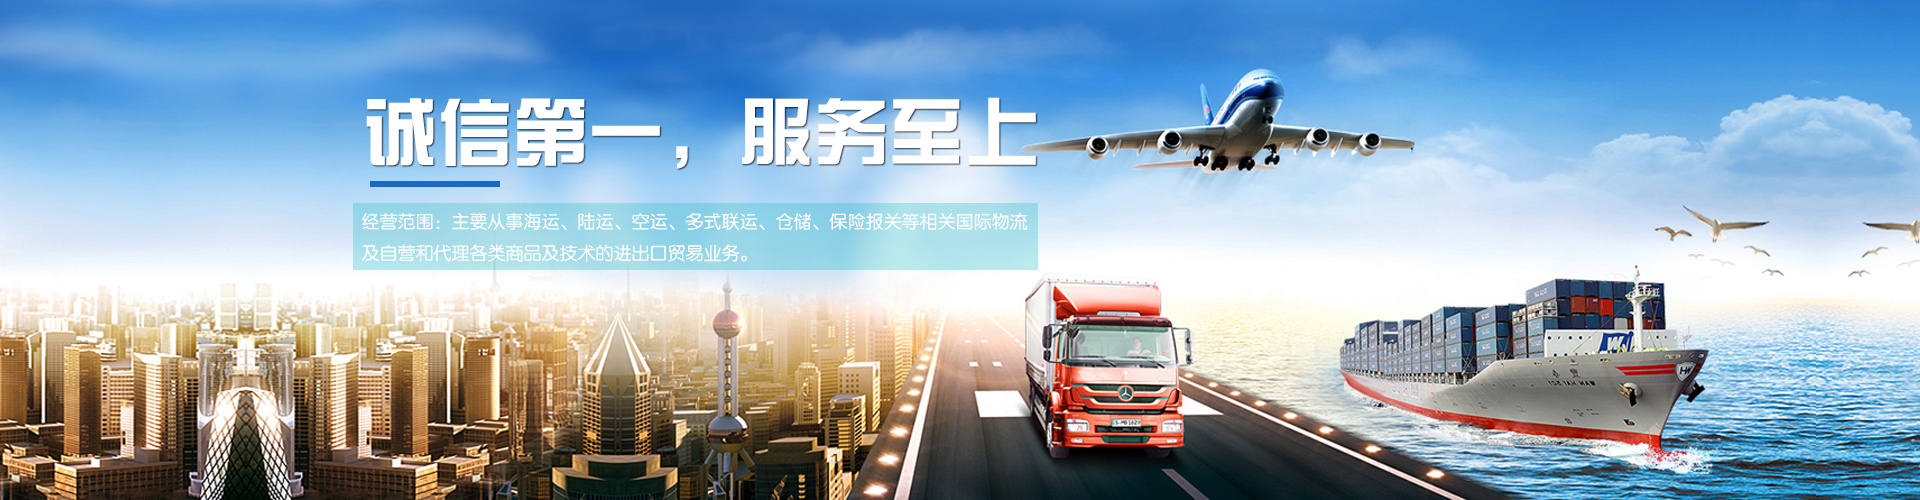 上海涂料空运样品备案在备案